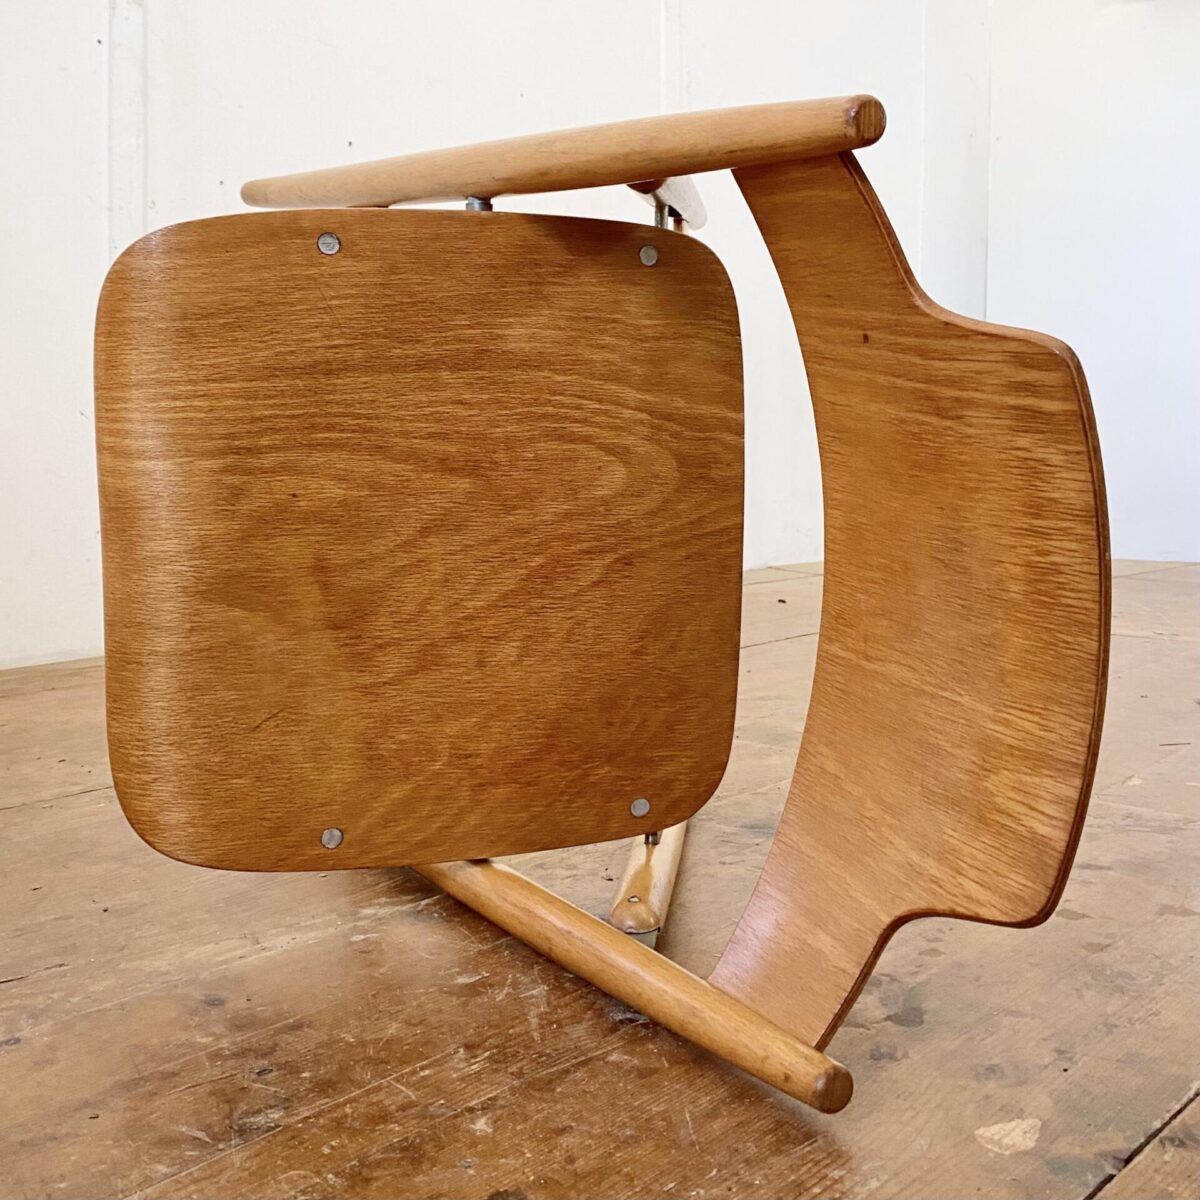 Deuxieme.shop Zwei Klappstühle, Modell SE18 von Egon Eiermann. Hergestellt von Wilde & Spieth. Sitz und Rücken Buche Sperrholz, ergonomisch formverleimt. Das zusammenklappbare Stuhlgestell ist aus Buche Vollholz. Die Stühle sind in stabilem Zustand mit warmer Alterspatina. 